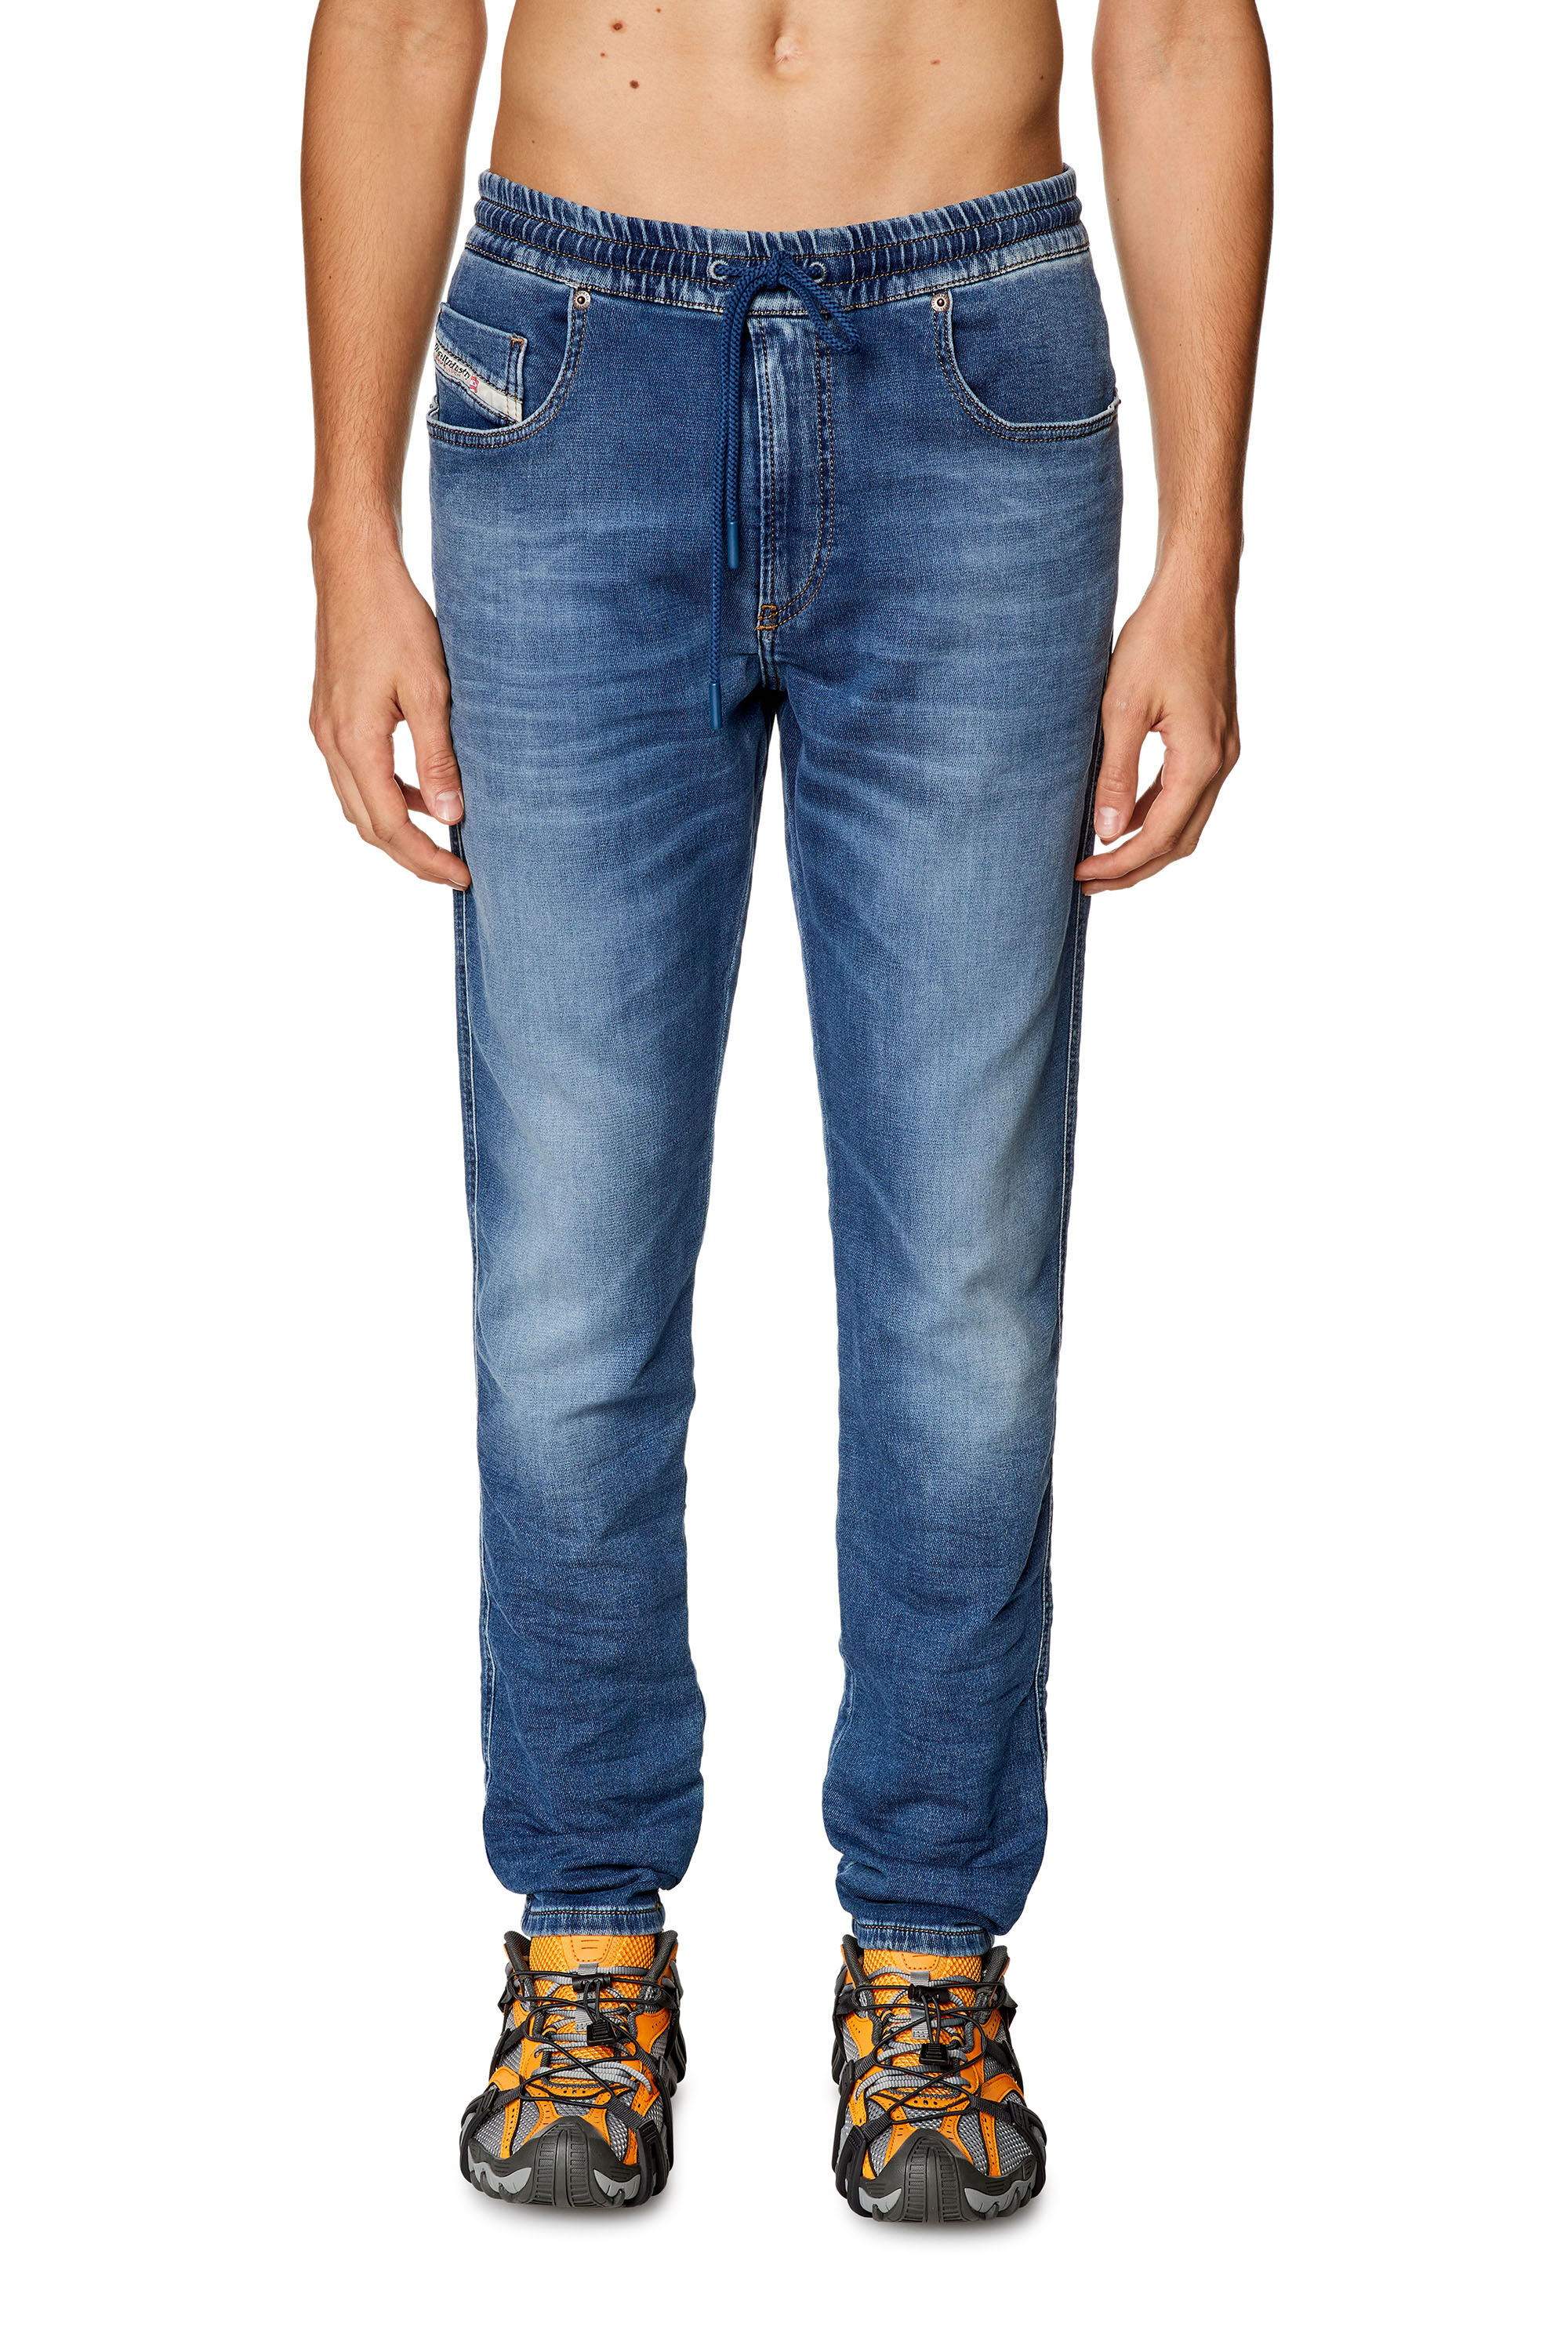 Men's Slim Jeans | Medium blue | Diesel 2060 D-Strukt Joggjeans®